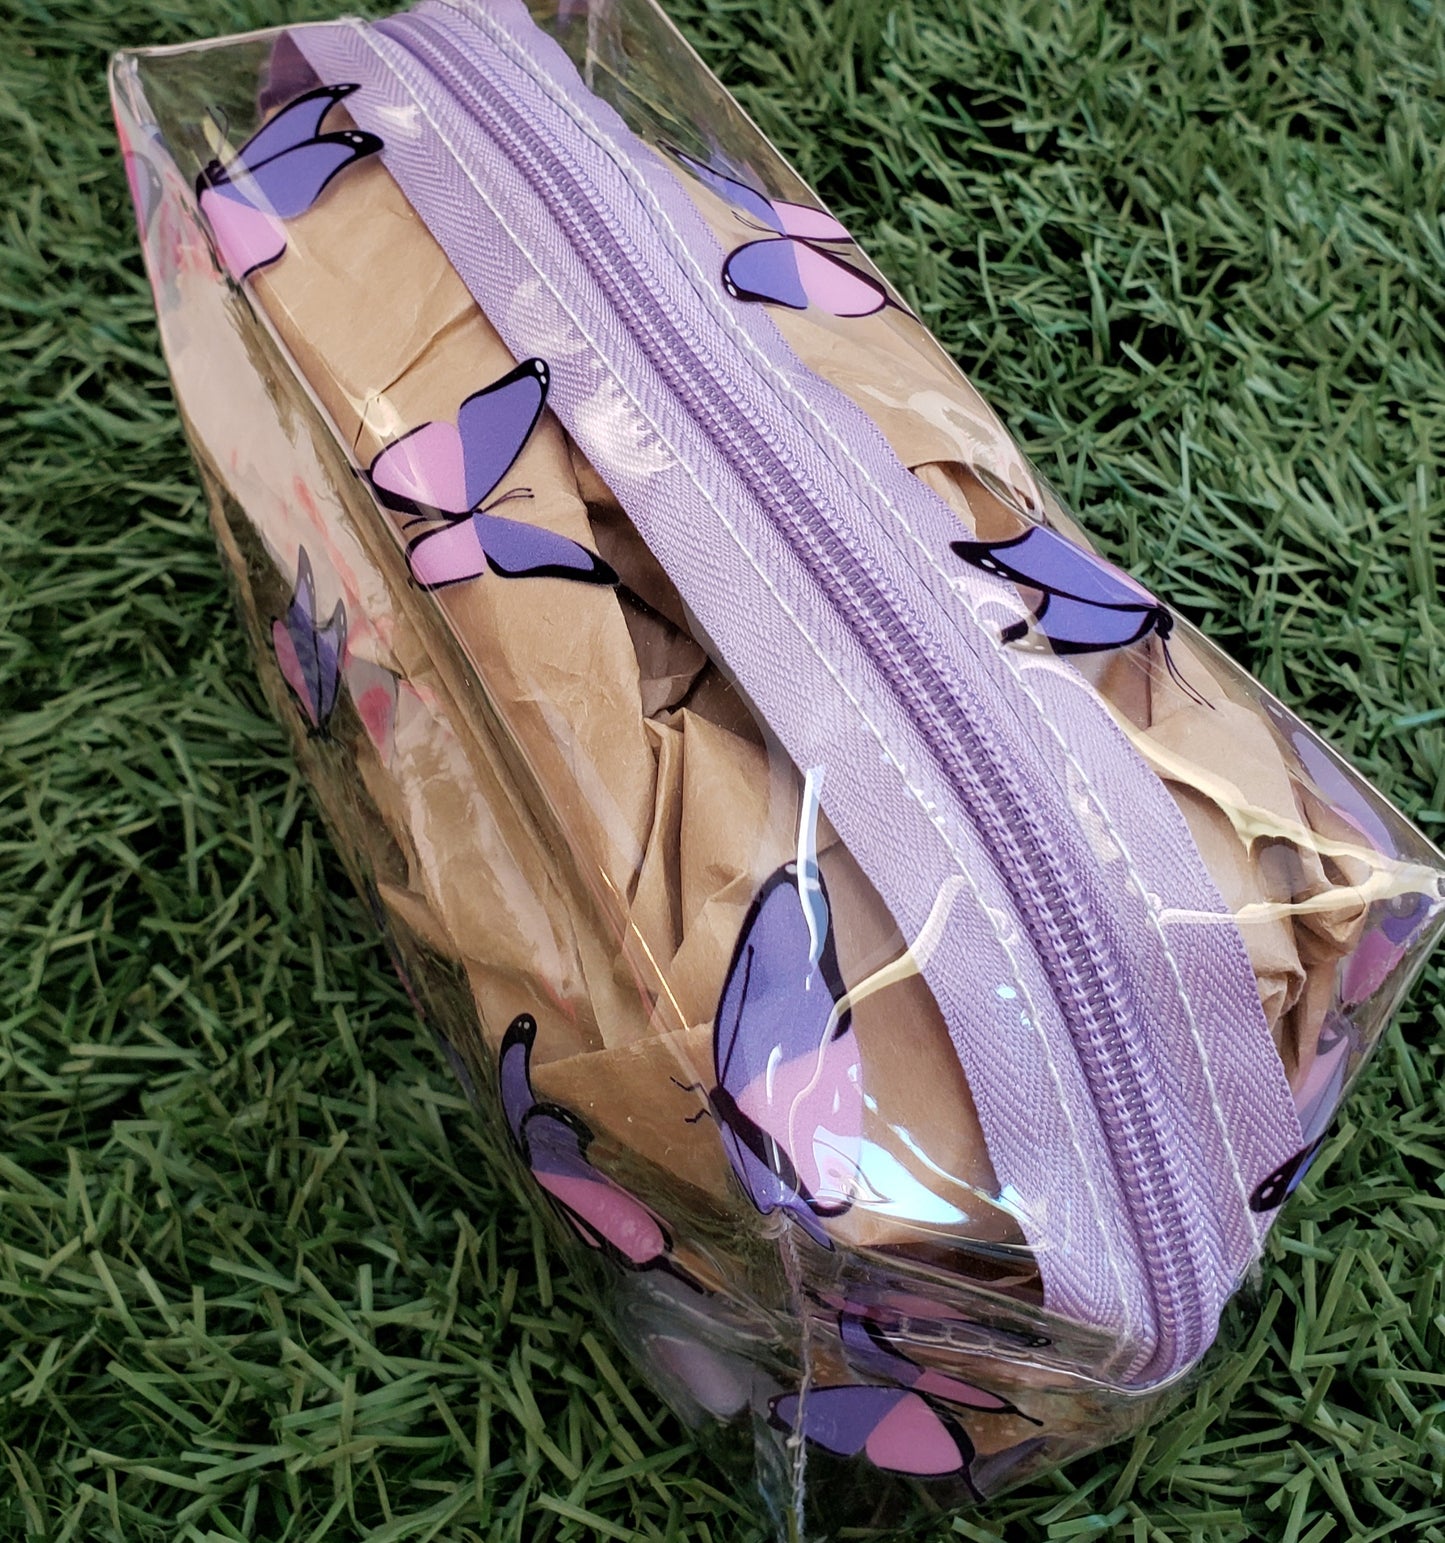 Butterfly Makeup Bag